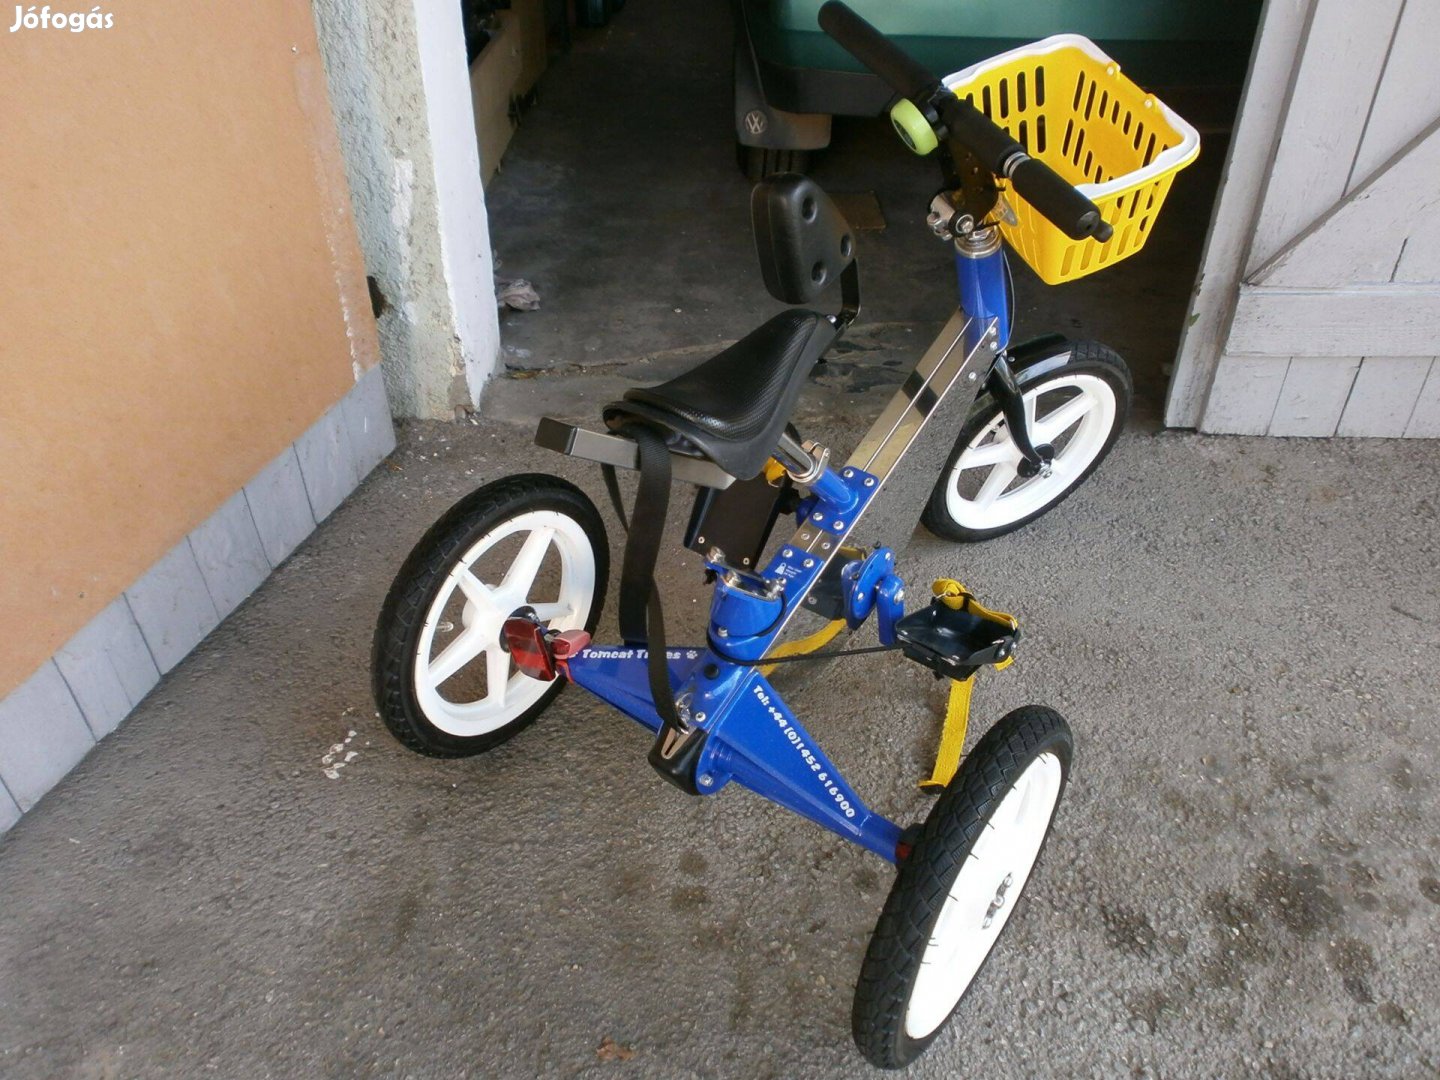 Tomcat Trike fejlesztő gyermek tricikli eladó szállítással